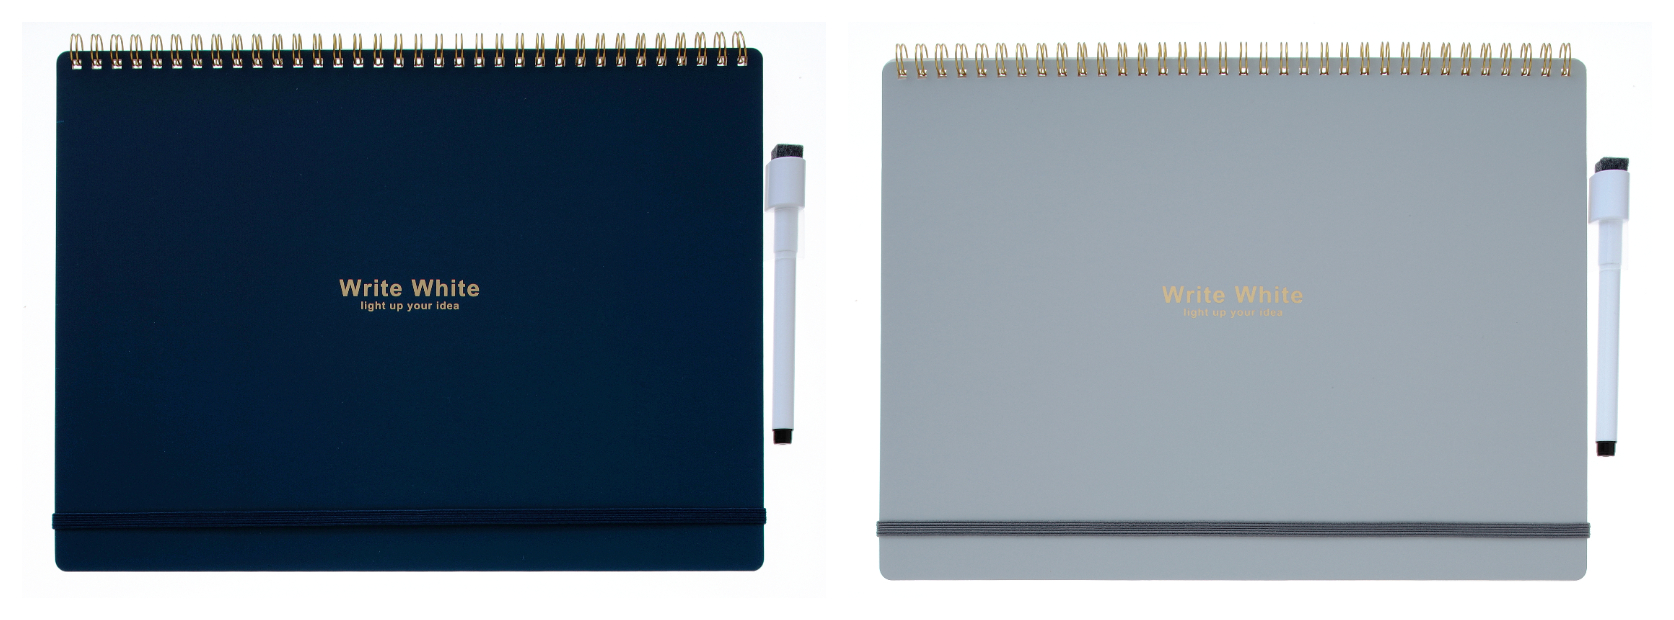 大好評のホワイトボードノート Write White シリーズにa4サイズが新登場 株式会社 学研ホールディングスのプレスリリース